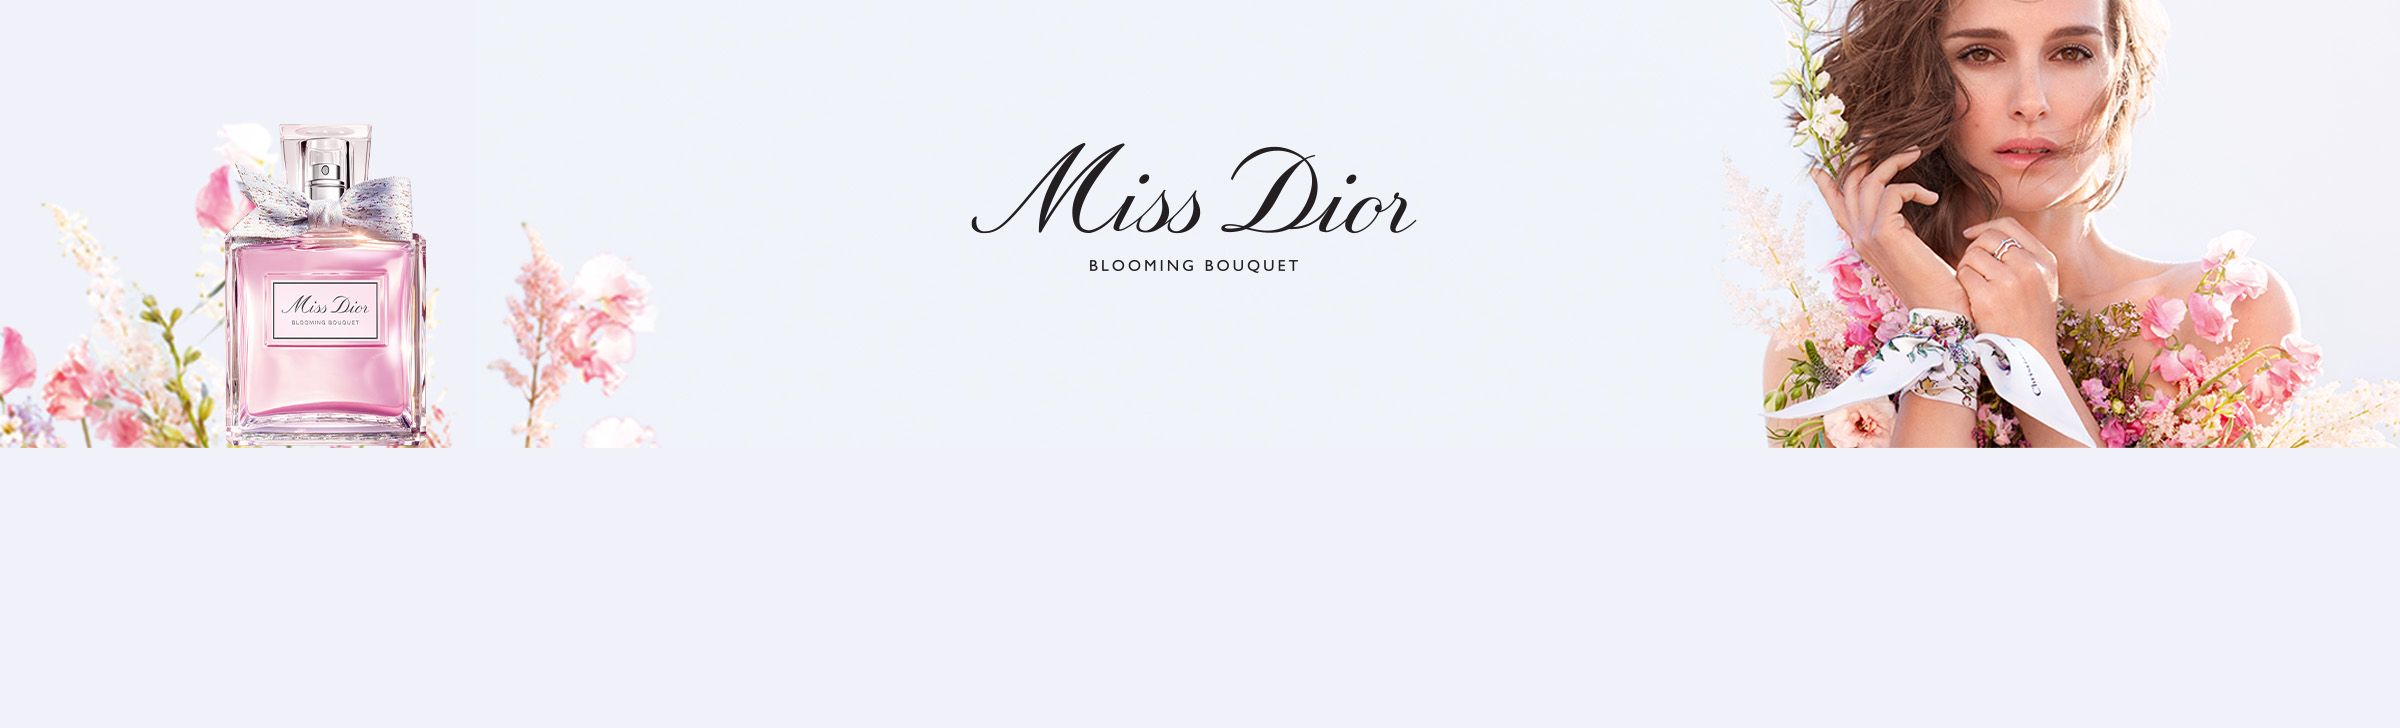 Dior Banner